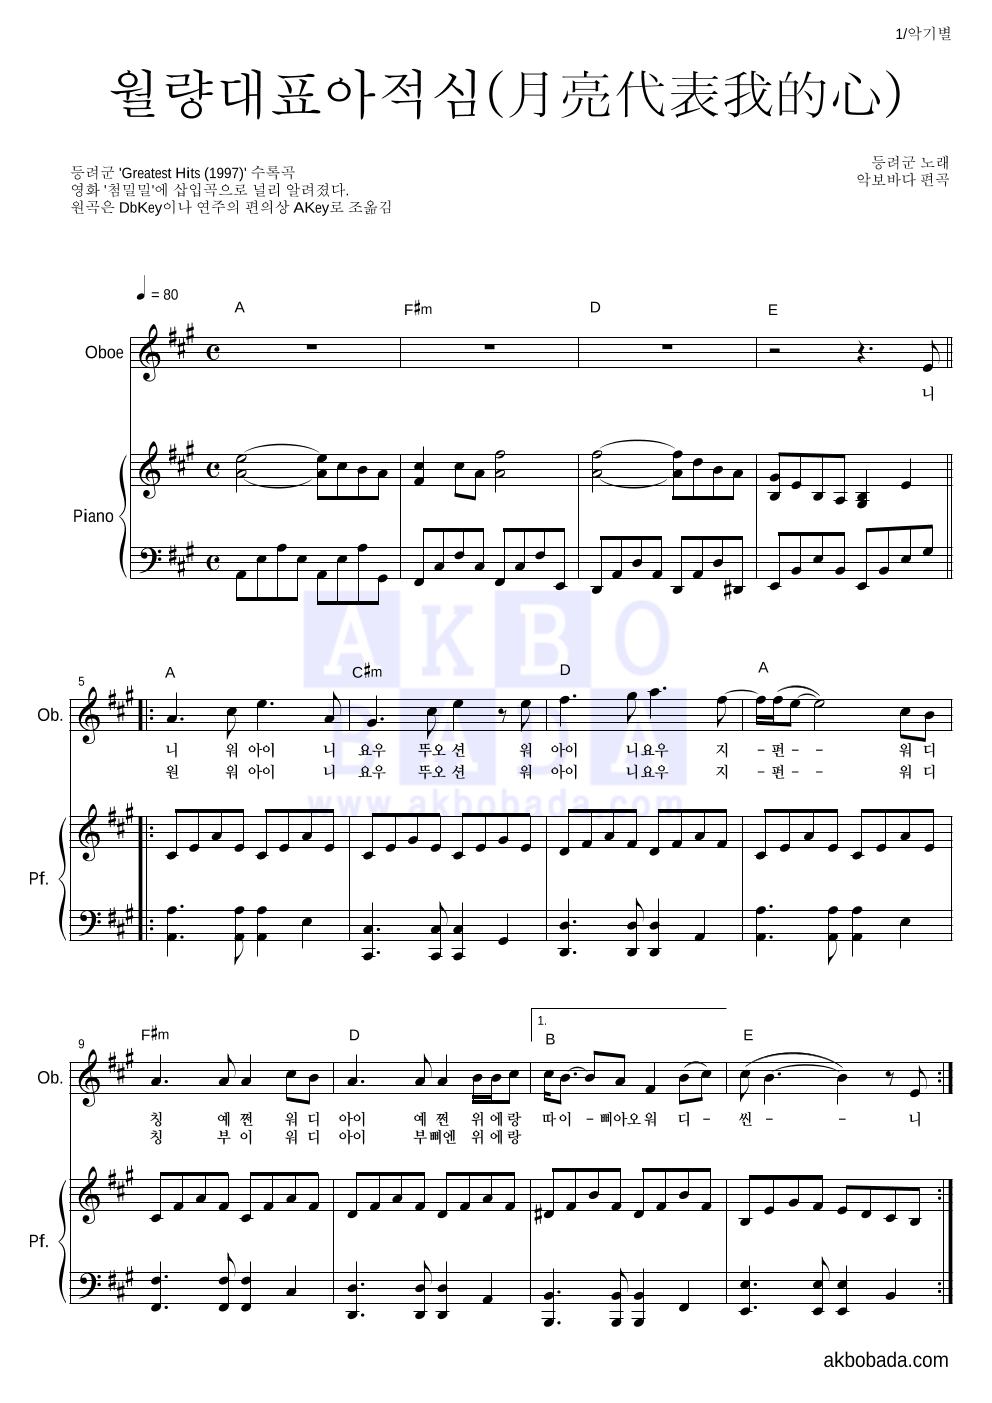 등려군(鄧麗筠) - 월량대표아적심 (月亮代表我的心) 오보에&피아노 악보 